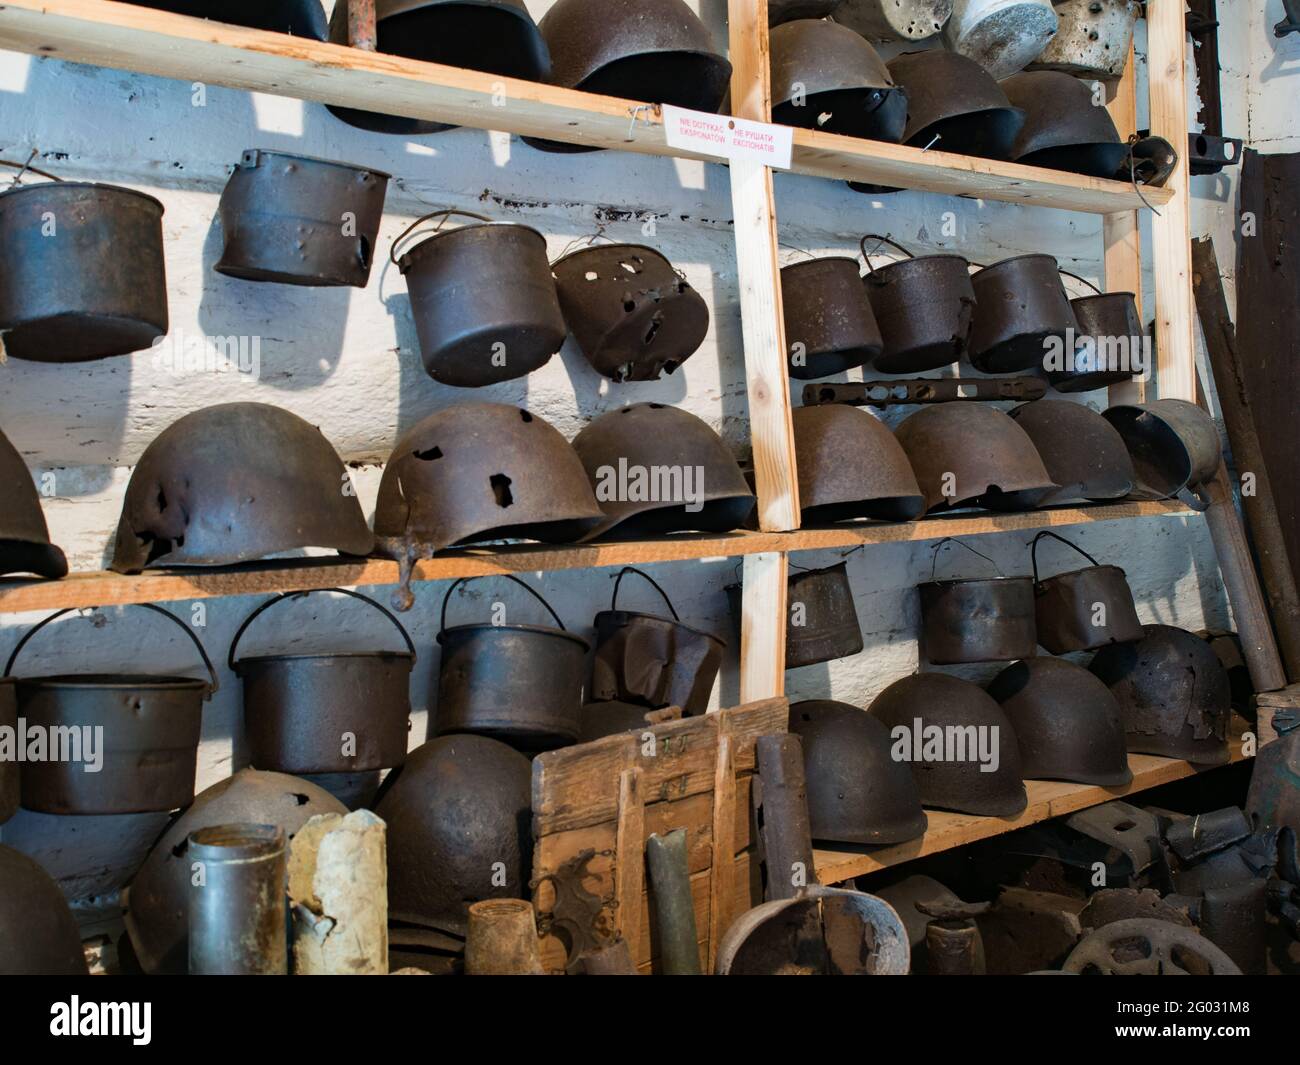 Zyndranowa, Polonia - 13 agosto 2017: Collezione di caschi, navi e altri accessori di guerra in metallo antico al museo della cultura Lemko Foto Stock